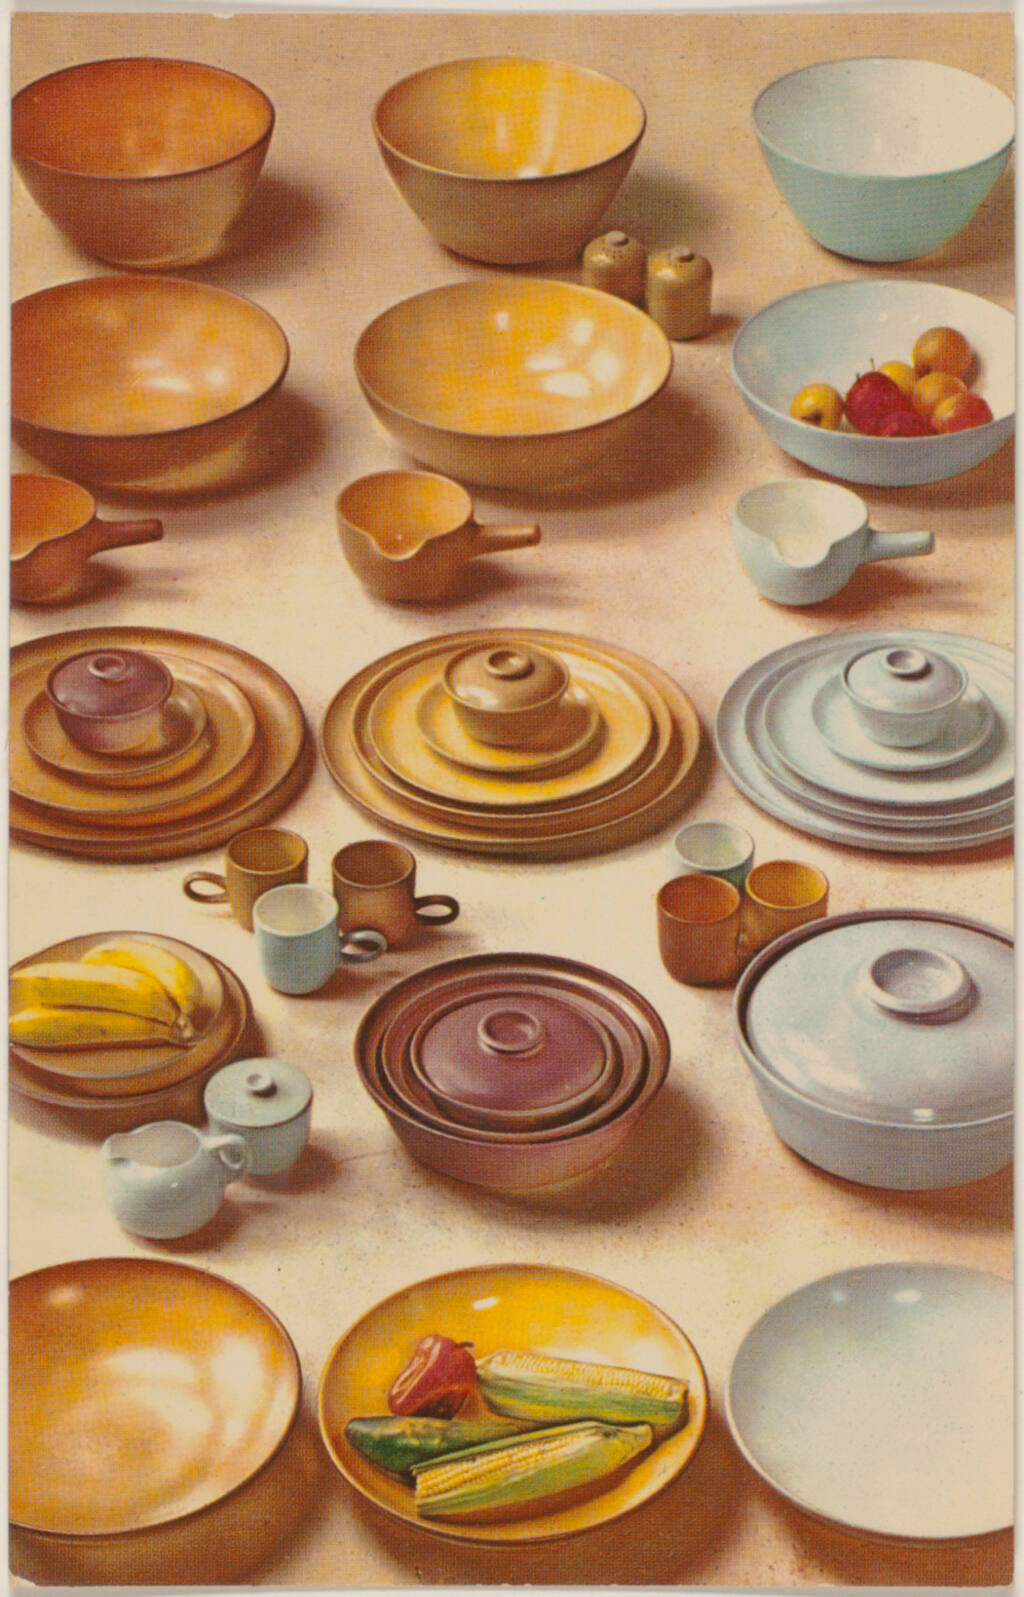 Visionary mid-century ceramist Edith Heath's timeless tableware